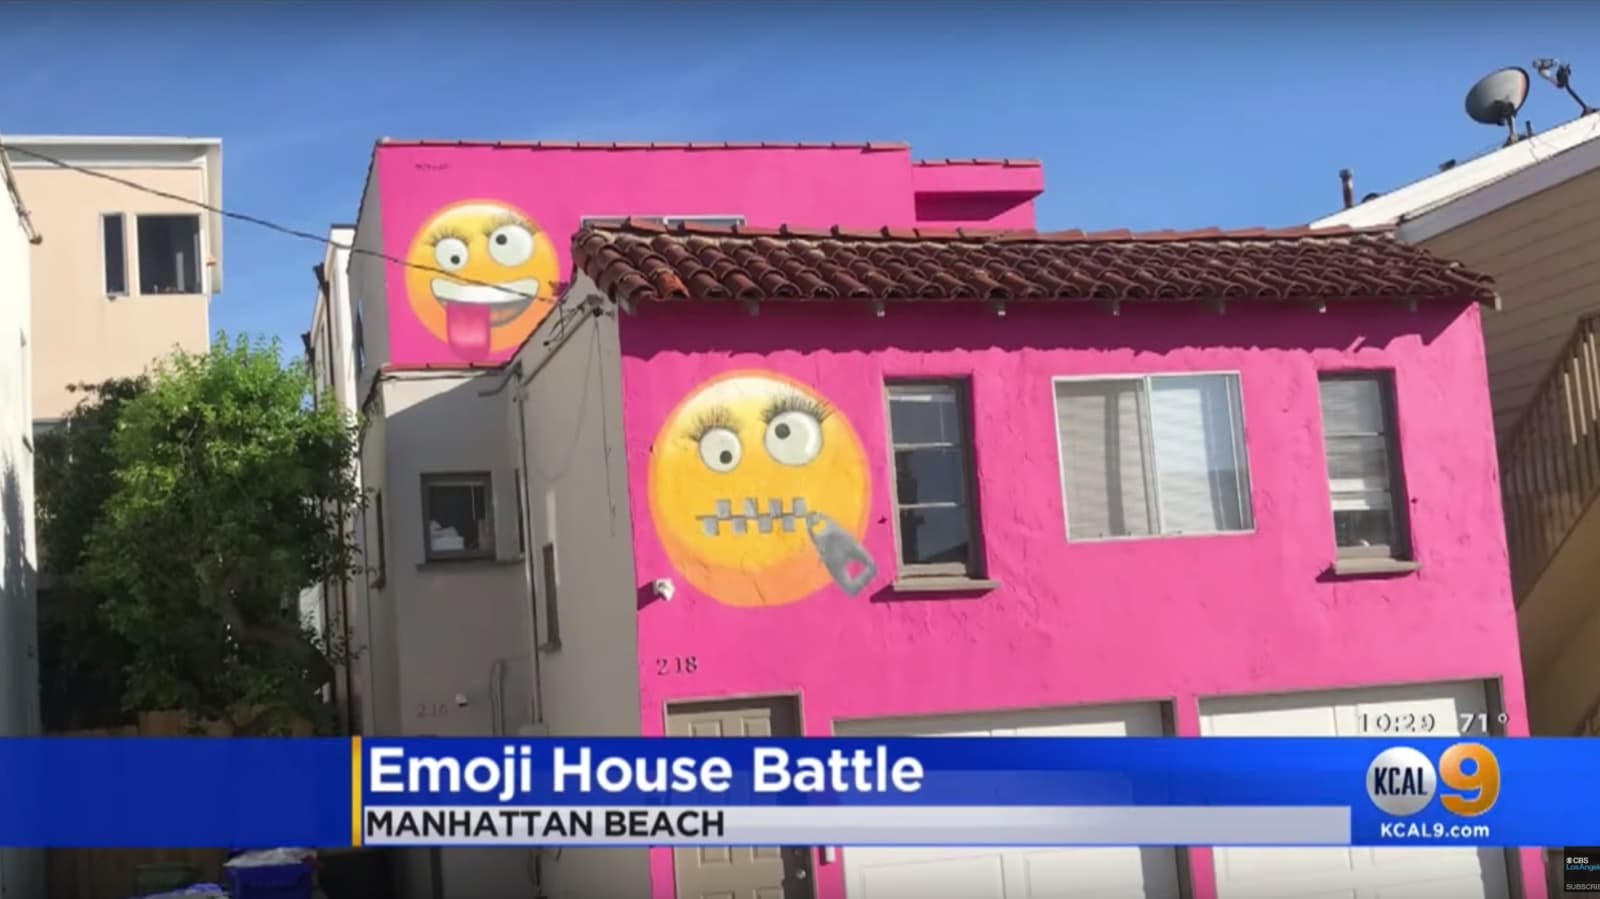 Casa com a fachada pintada de rosa e dois emojis desenhados